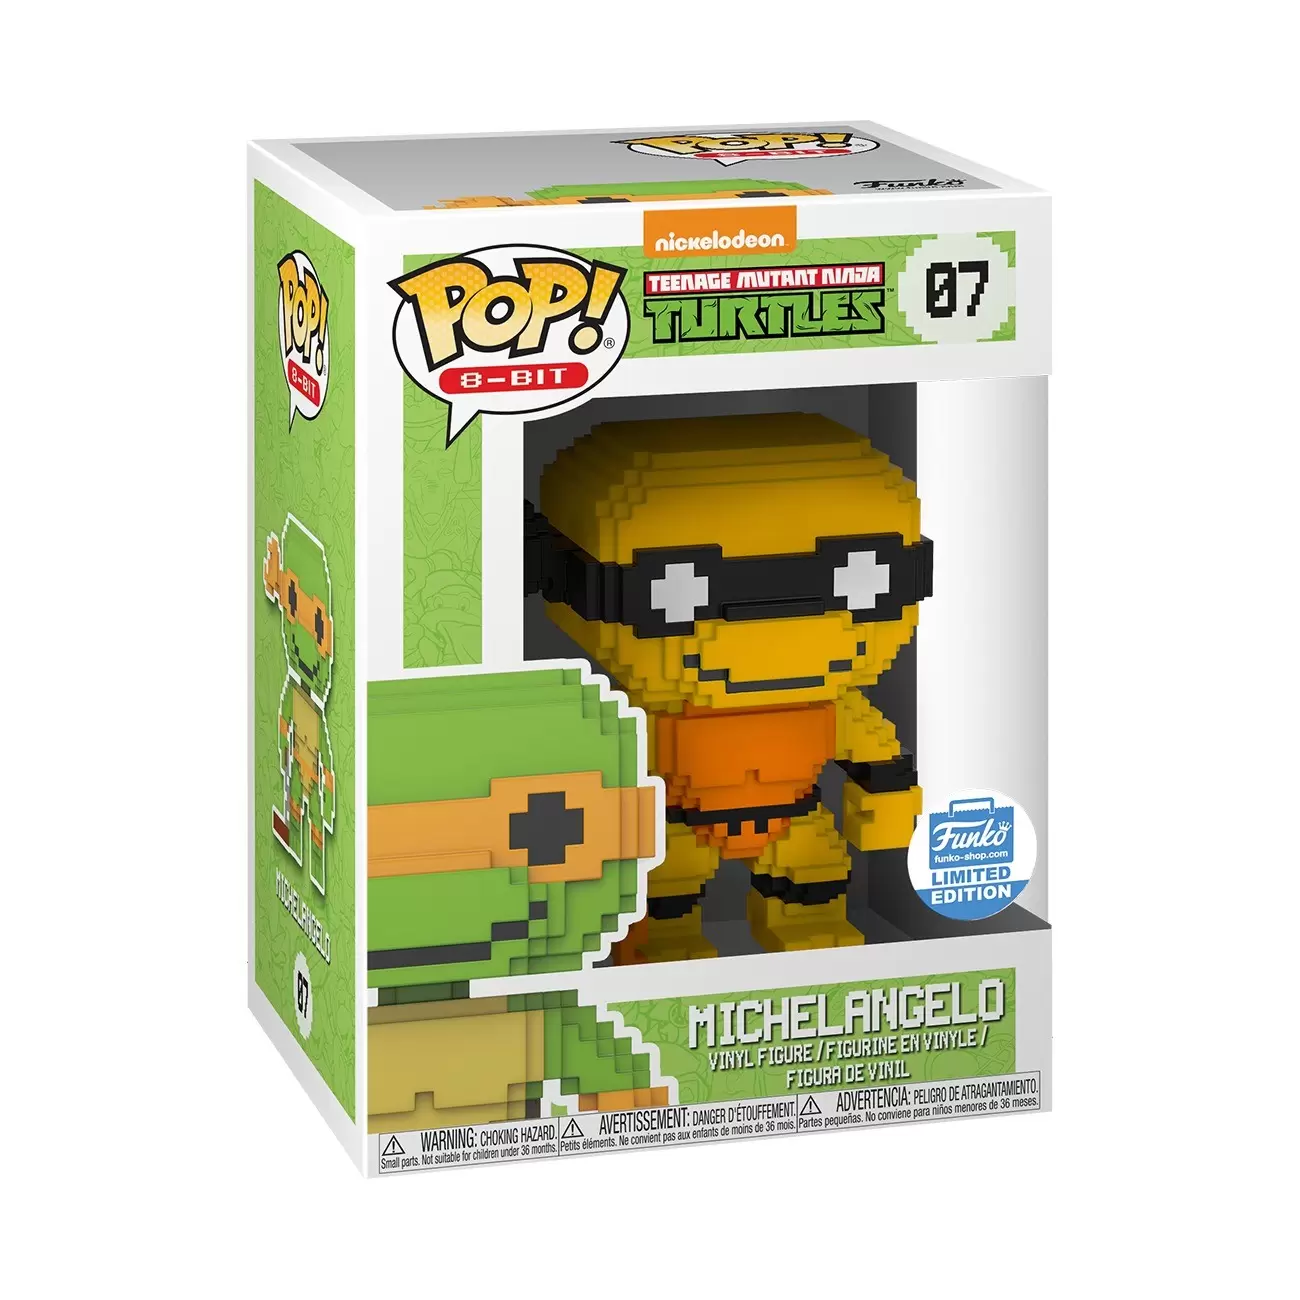 POP! 8-Bit - Teenage Mutant Ninja Turtles - Neon Michelangelo